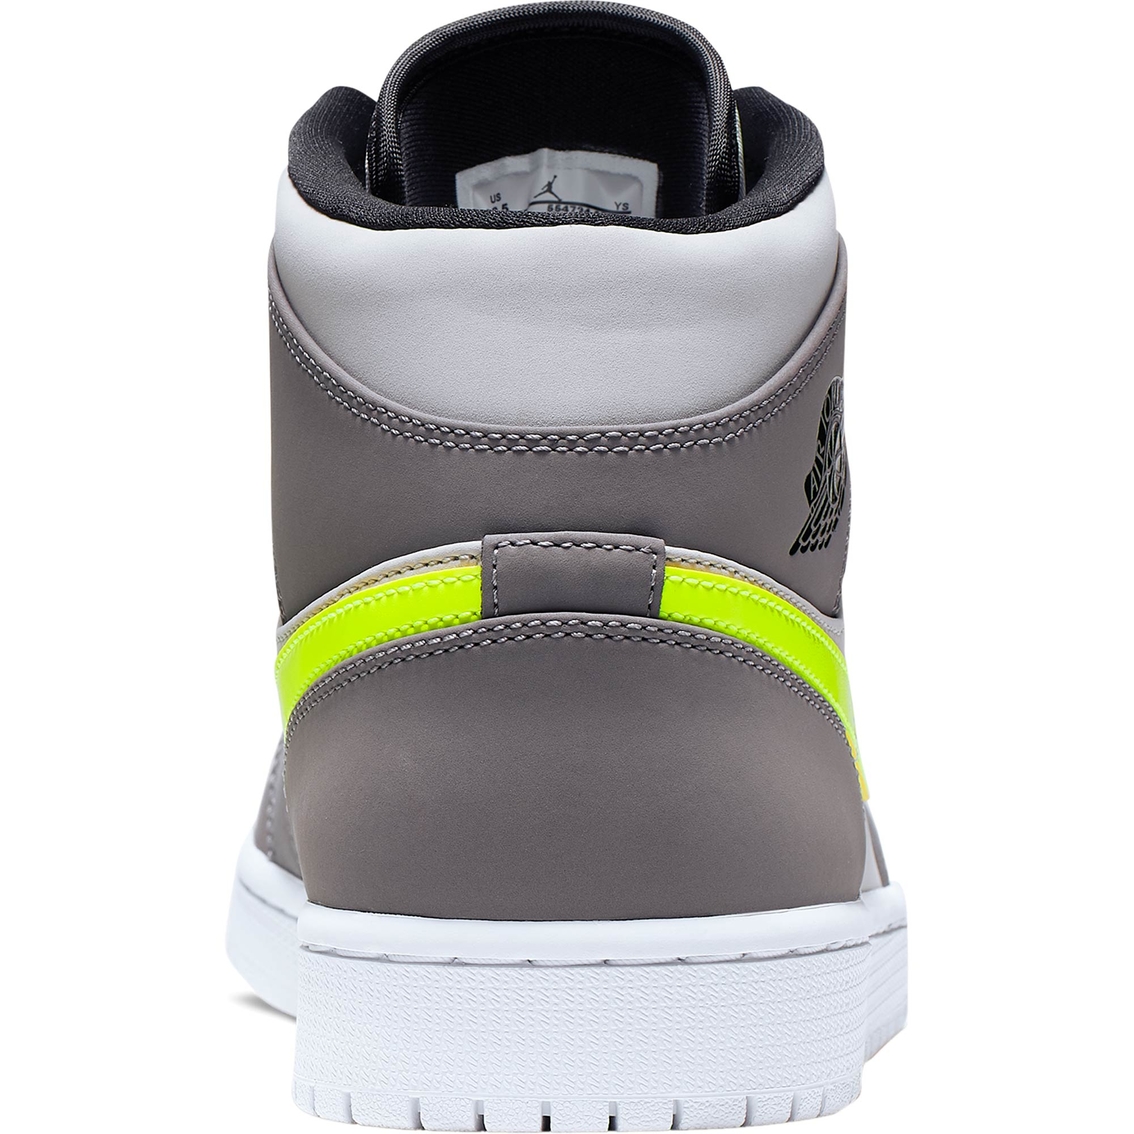 Air Jordan 1 Mid Men's Shoes - Image 6 of 6